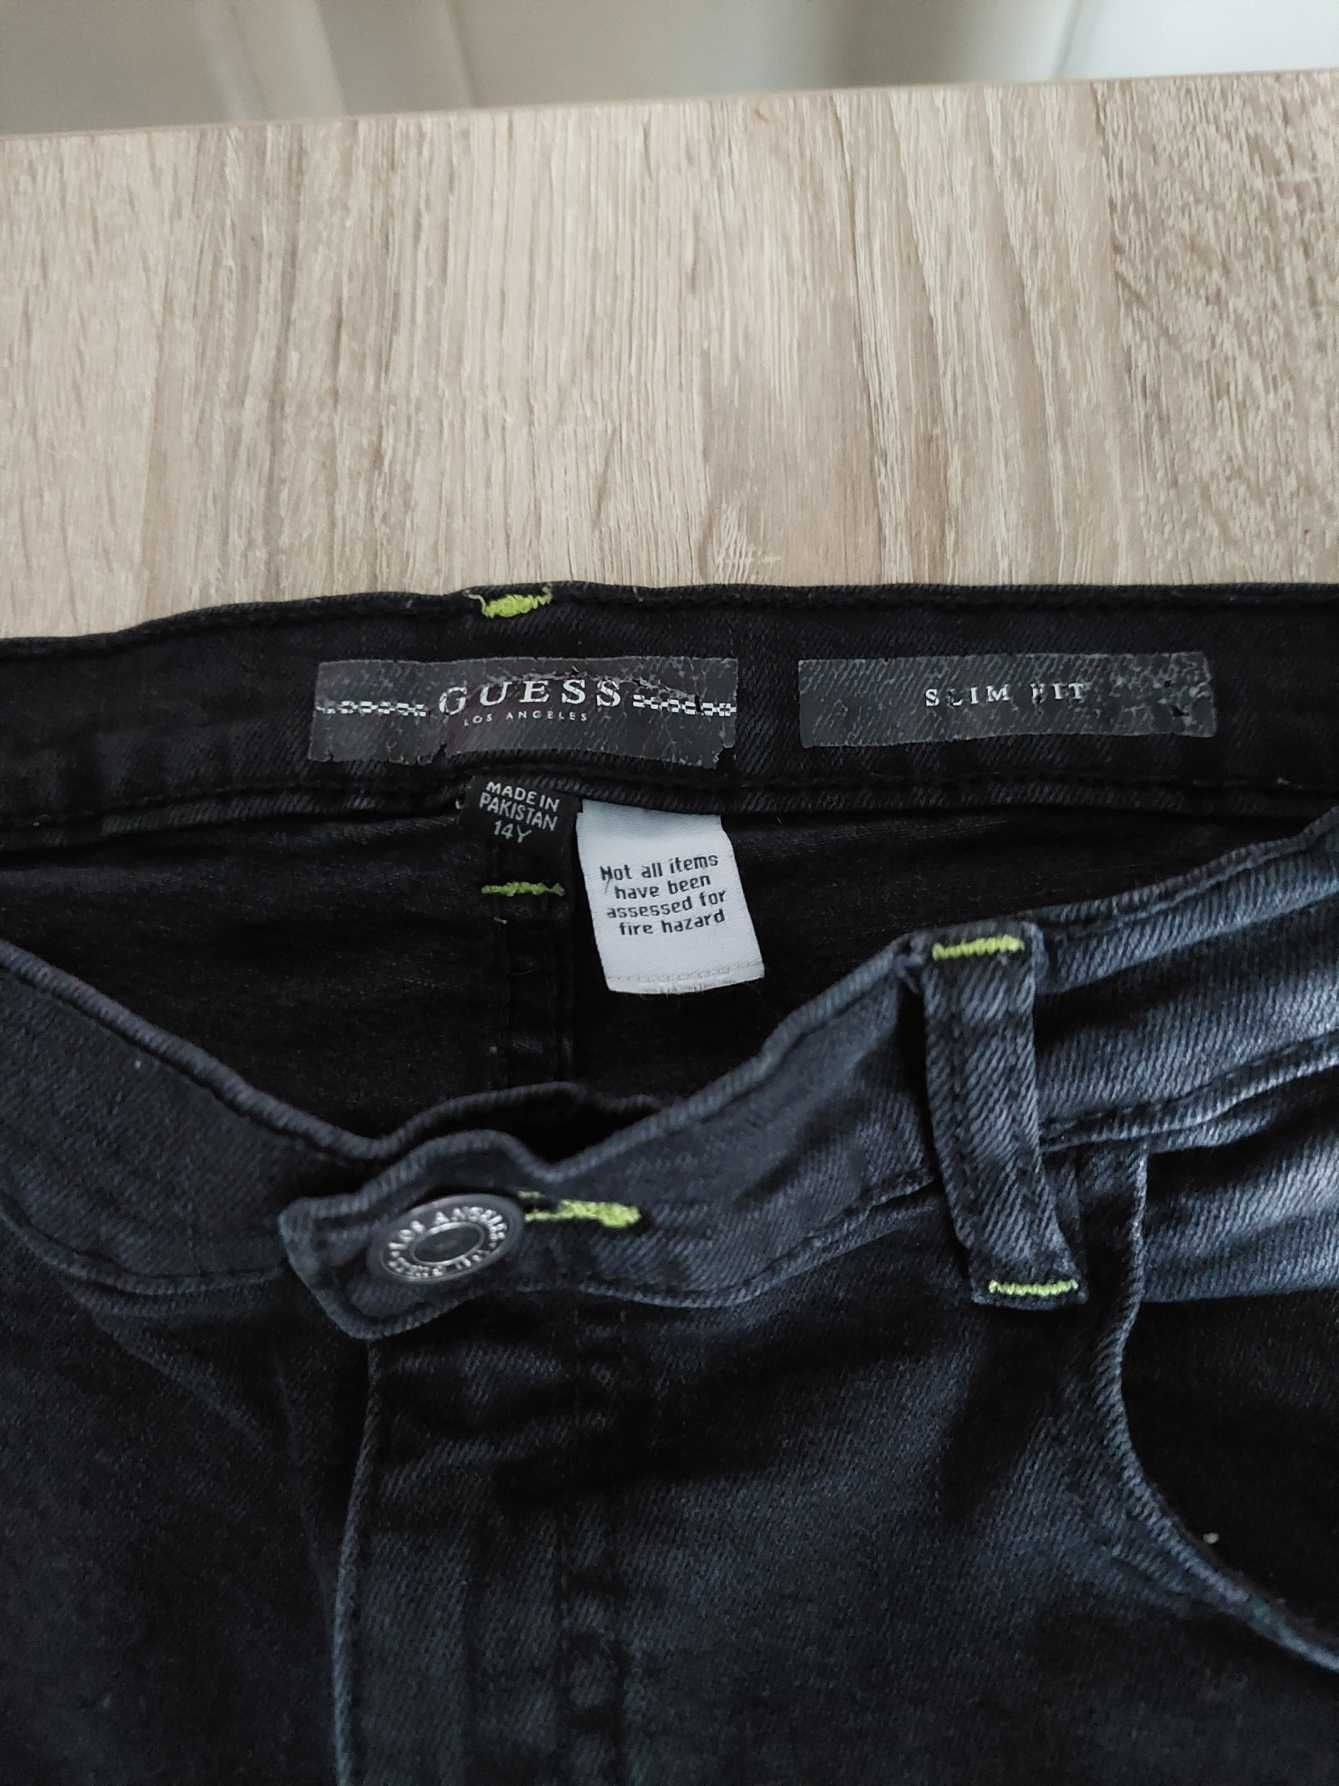 Spodnie chłopięce Guess, 14 l, jeans, czarne, stan idealny